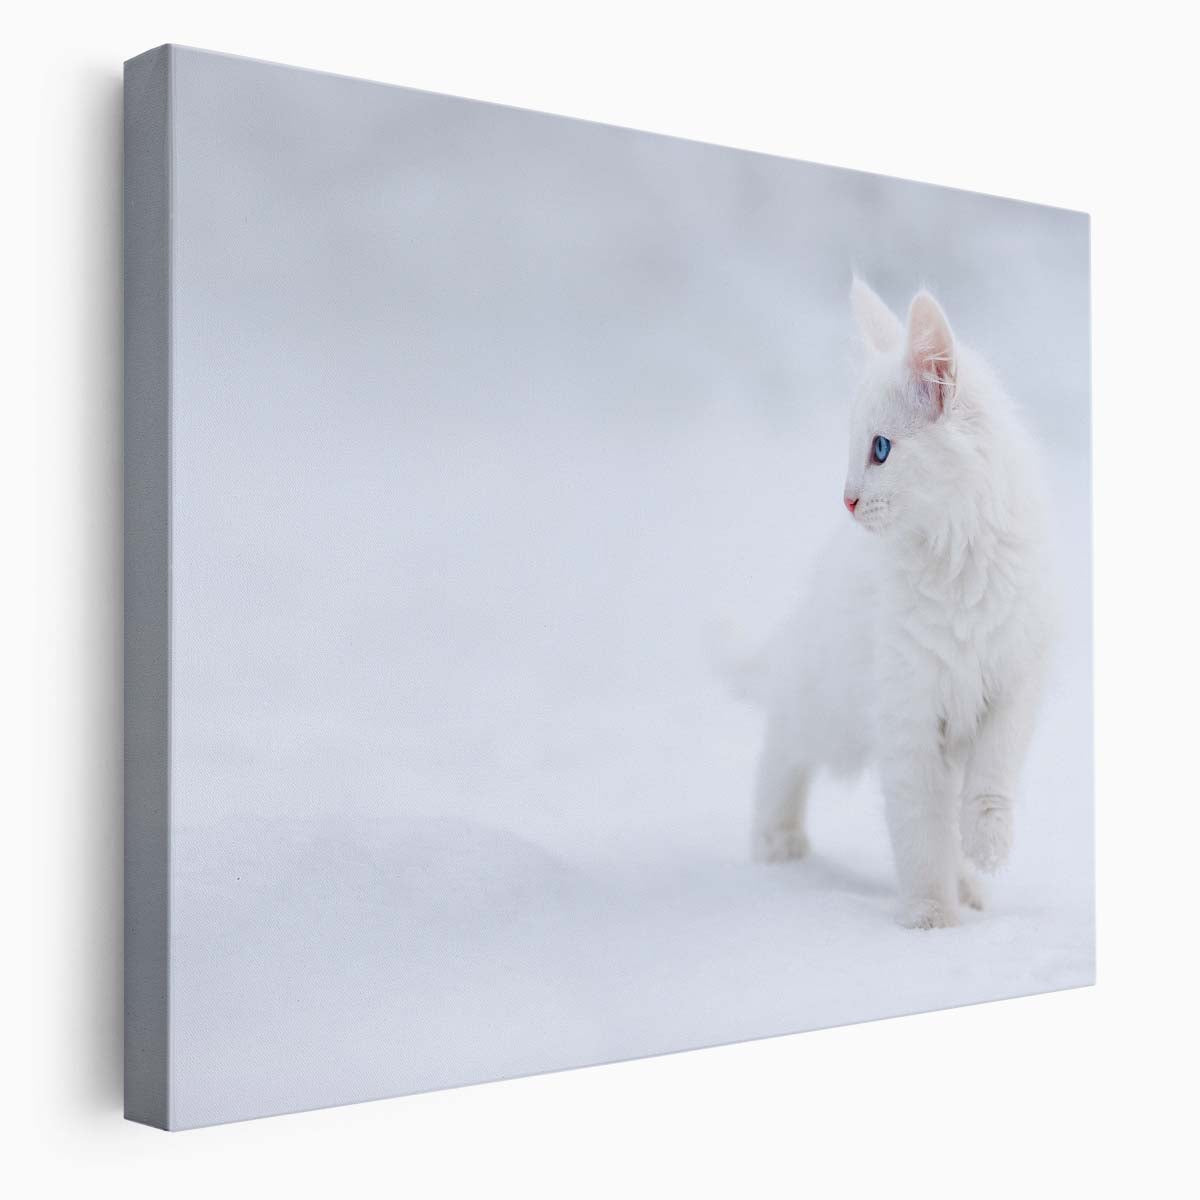 Cute White Kitten in Snowy Denmark Winter Wall Art by Luxuriance Designs. Made in USA.